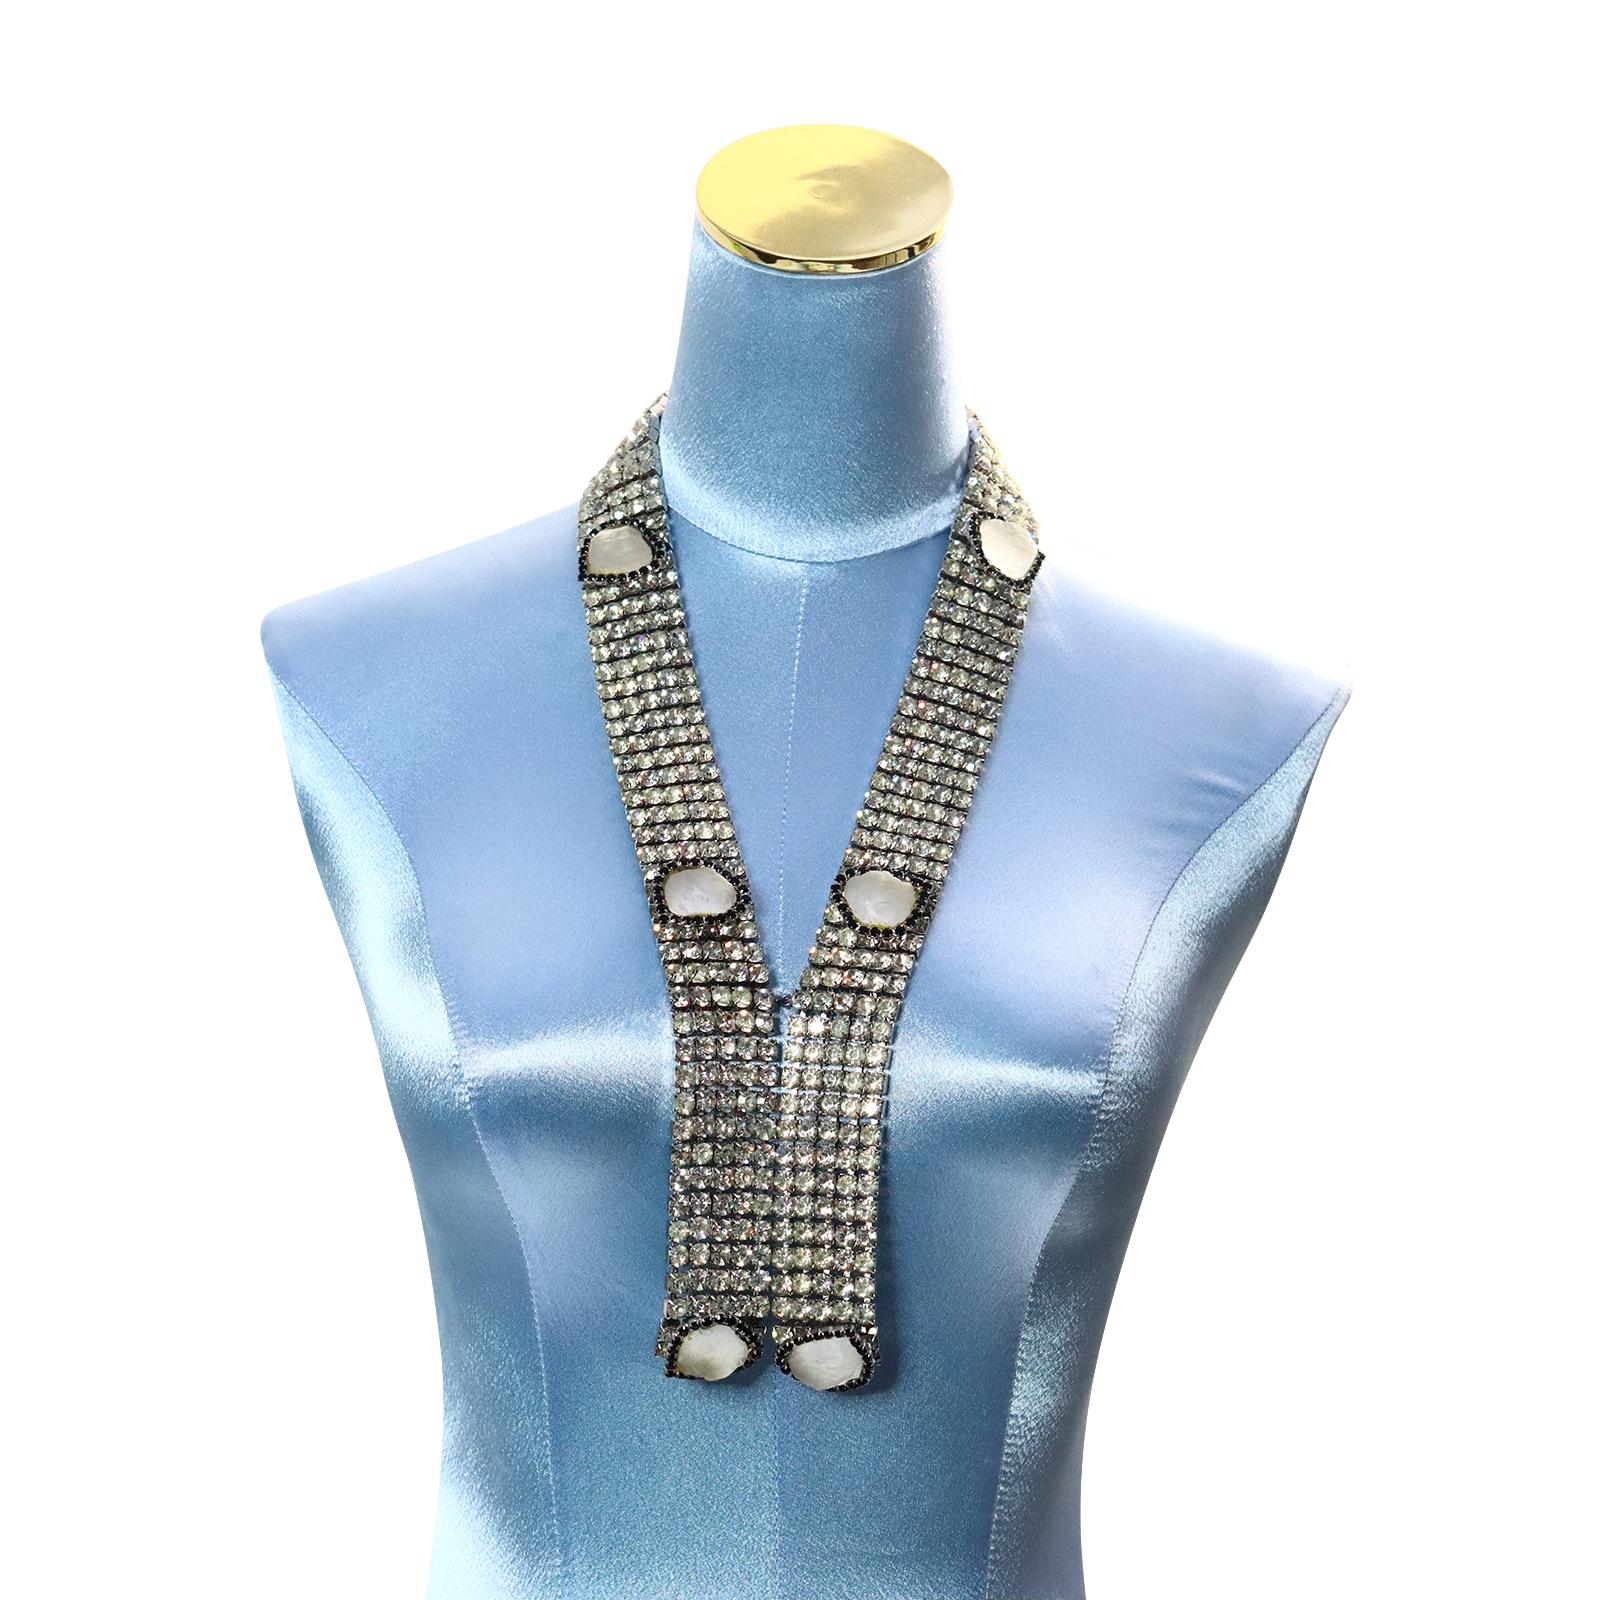 Women's or Men's Vintage Delillo Necklace with Quartz Pieces and Black Crystals Circa 1970s